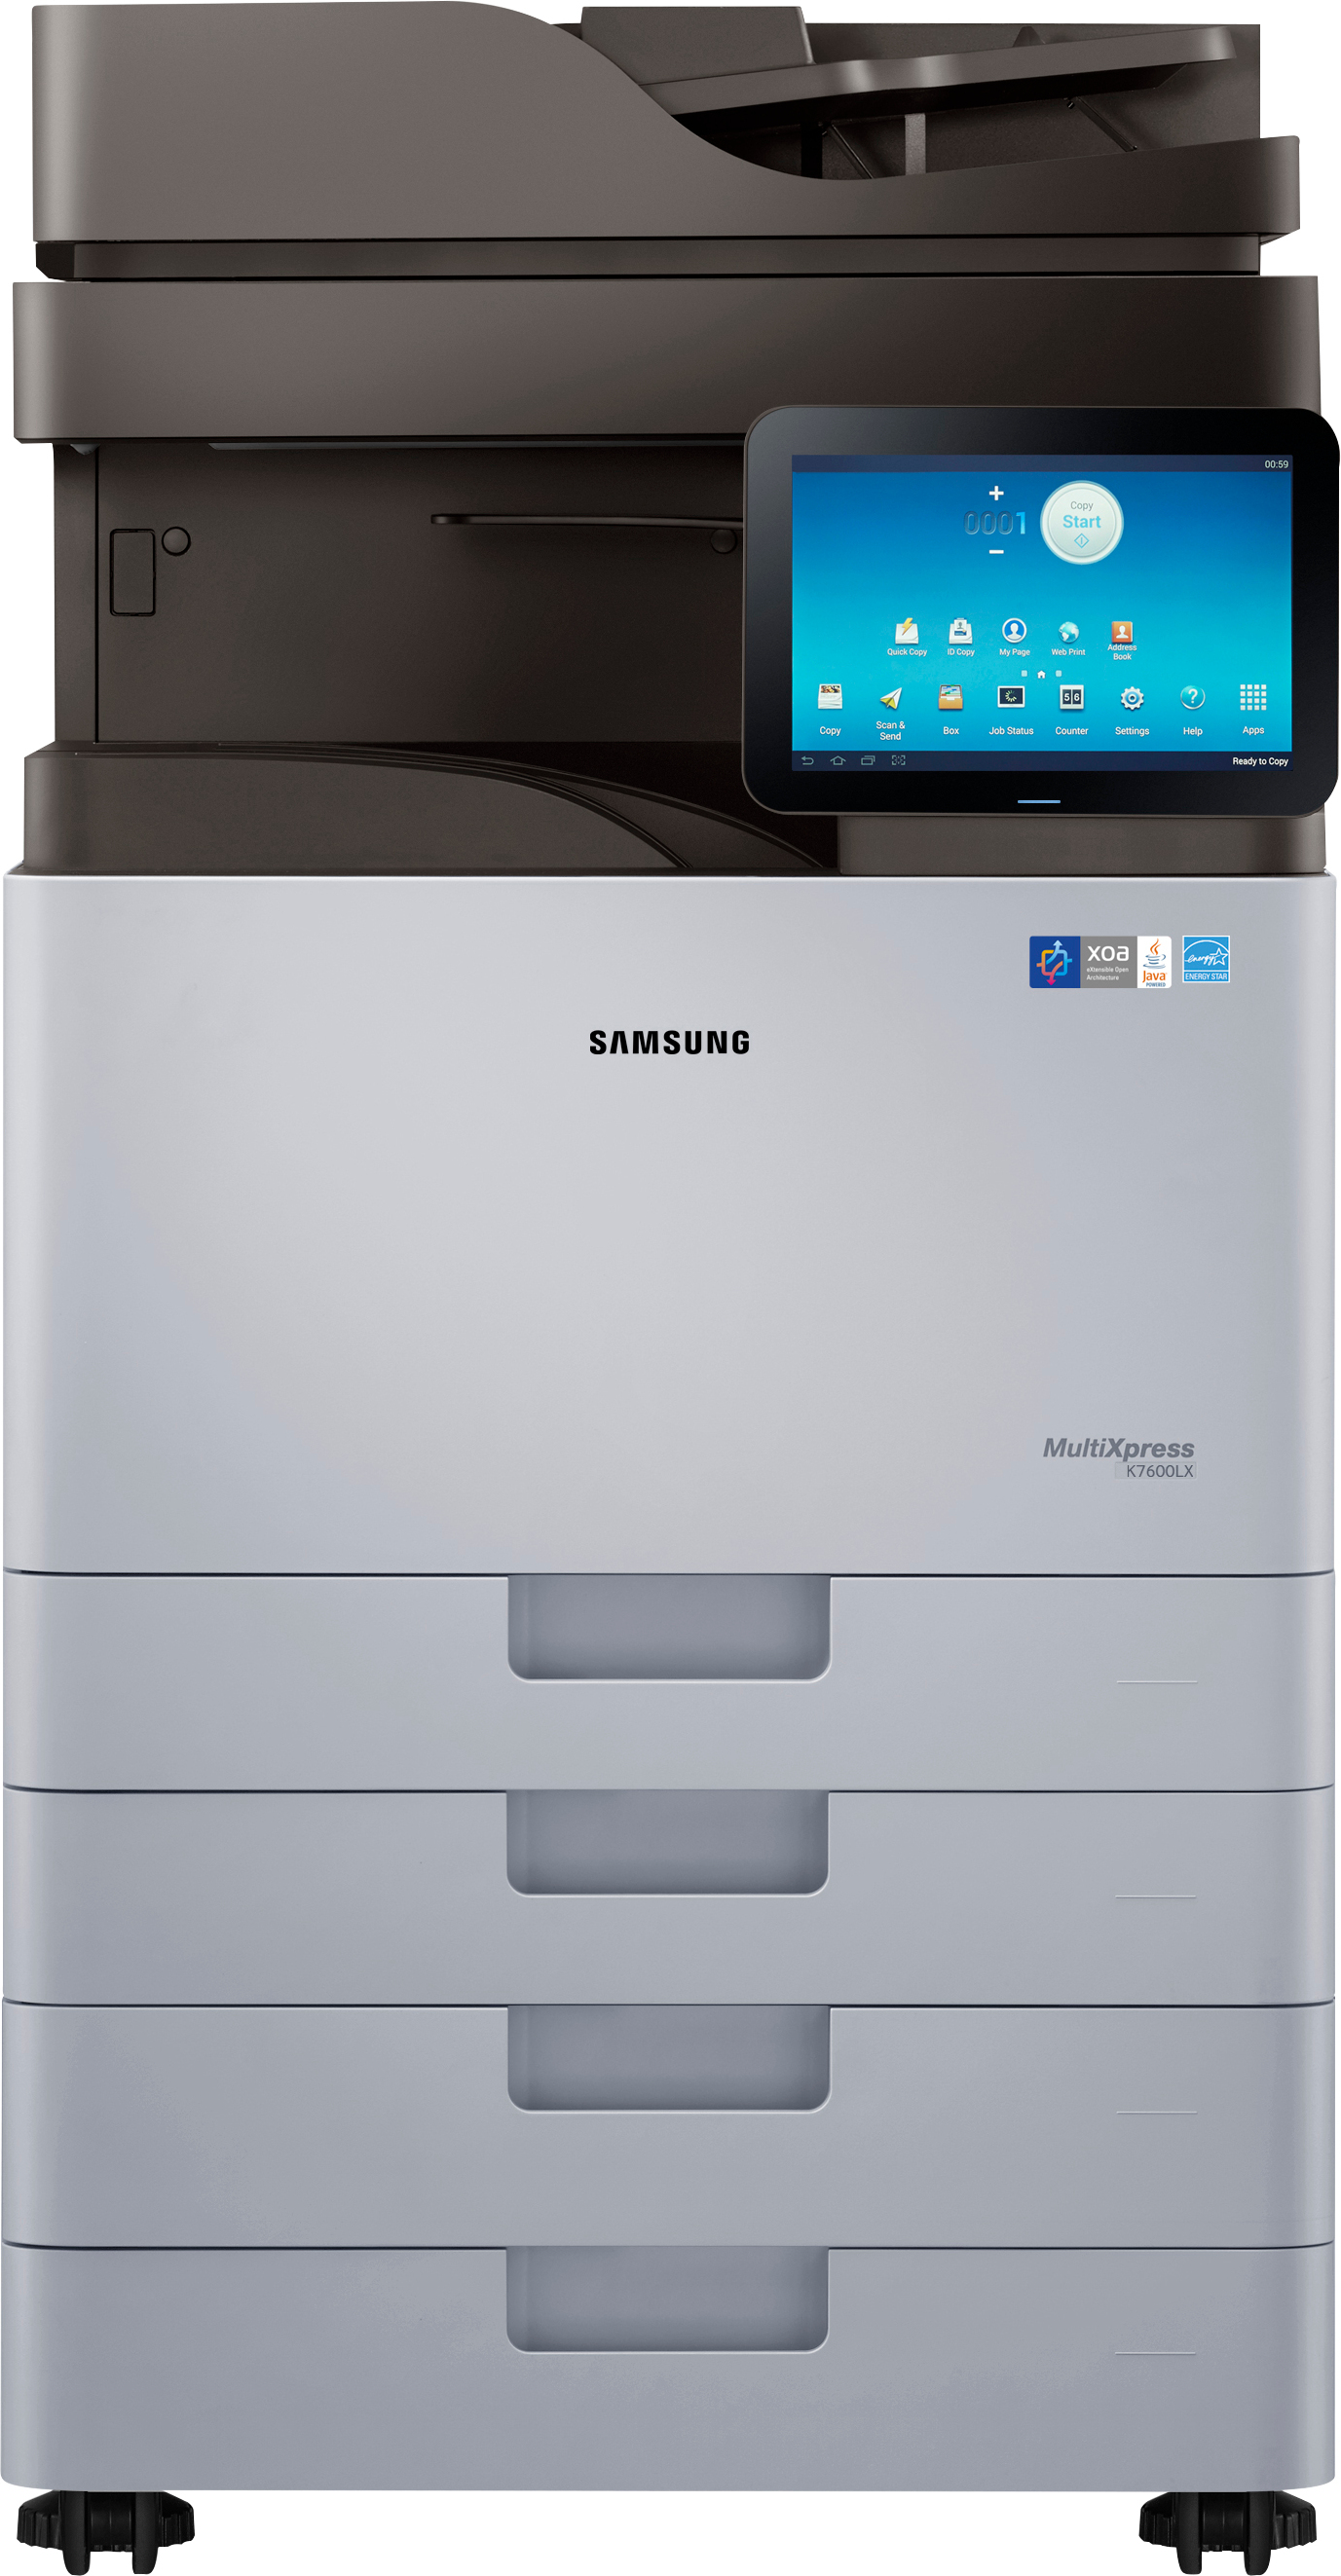 Impresora Color Samsung slk7600lx a3 hp multixpress laser 1200 120